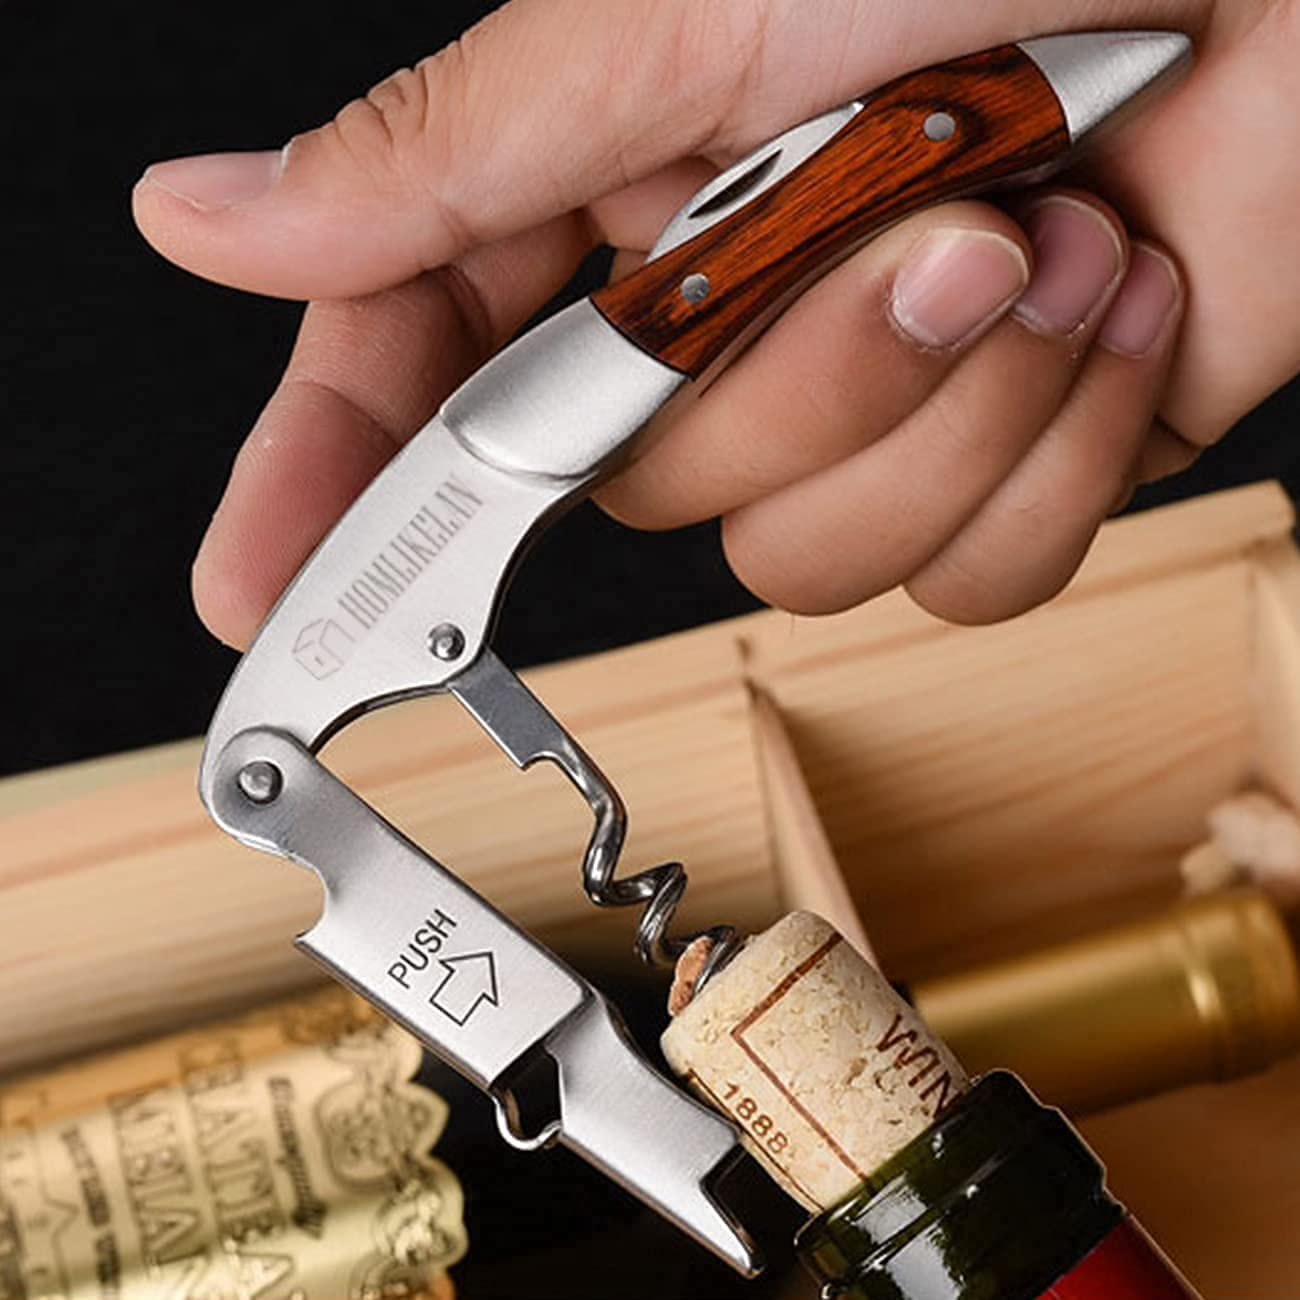 Wood Handle Wine Opener